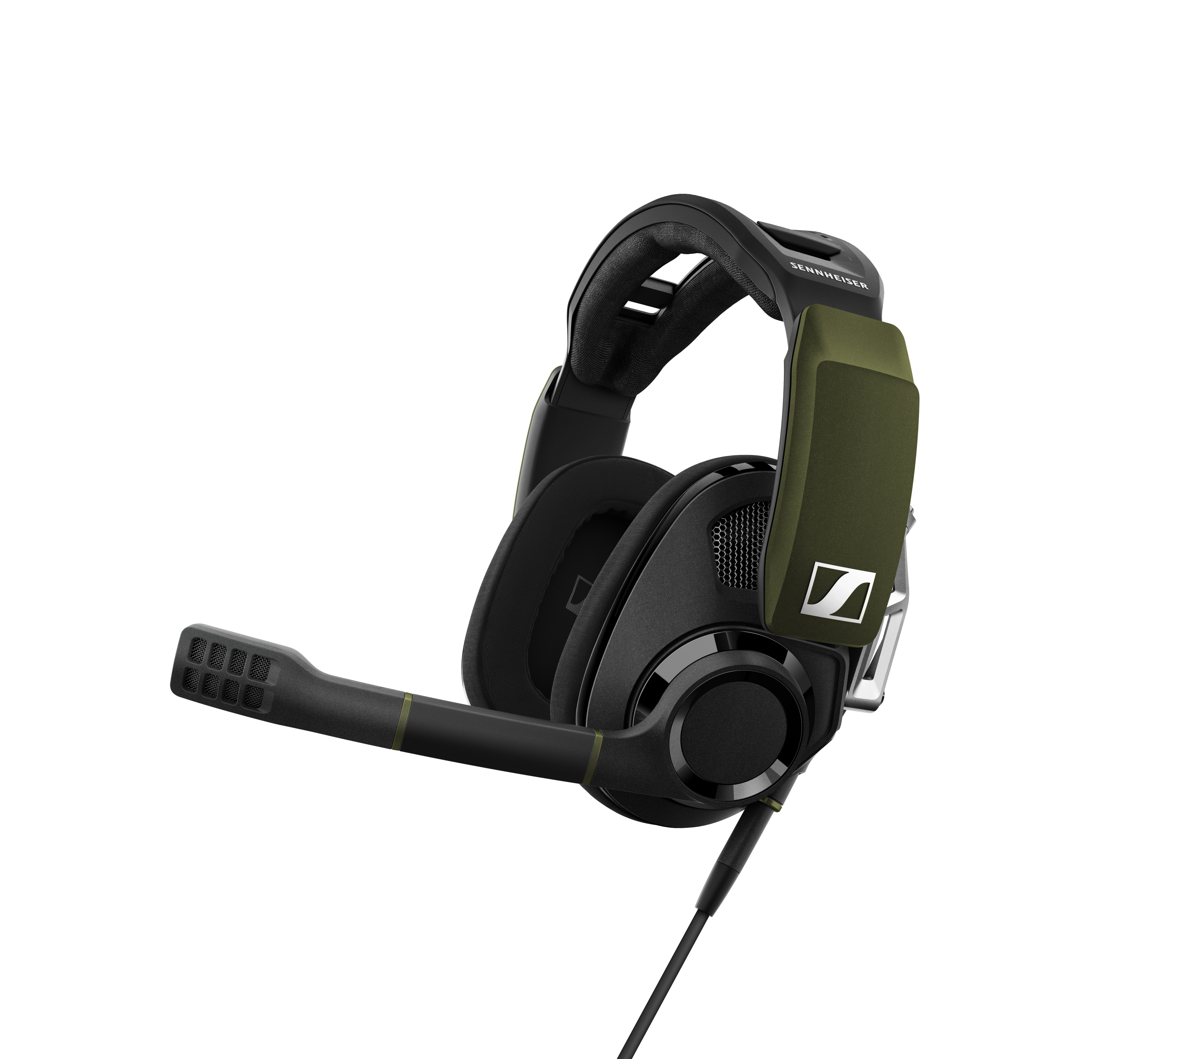 Das GSP 550 steht wie kein anderes Gaming-Headset für ein außergewöhnliches Spielerlebnis – mit einer perfekten Kombination aus HiFi-Klang und Dolby 7.1 Surround Sound. 